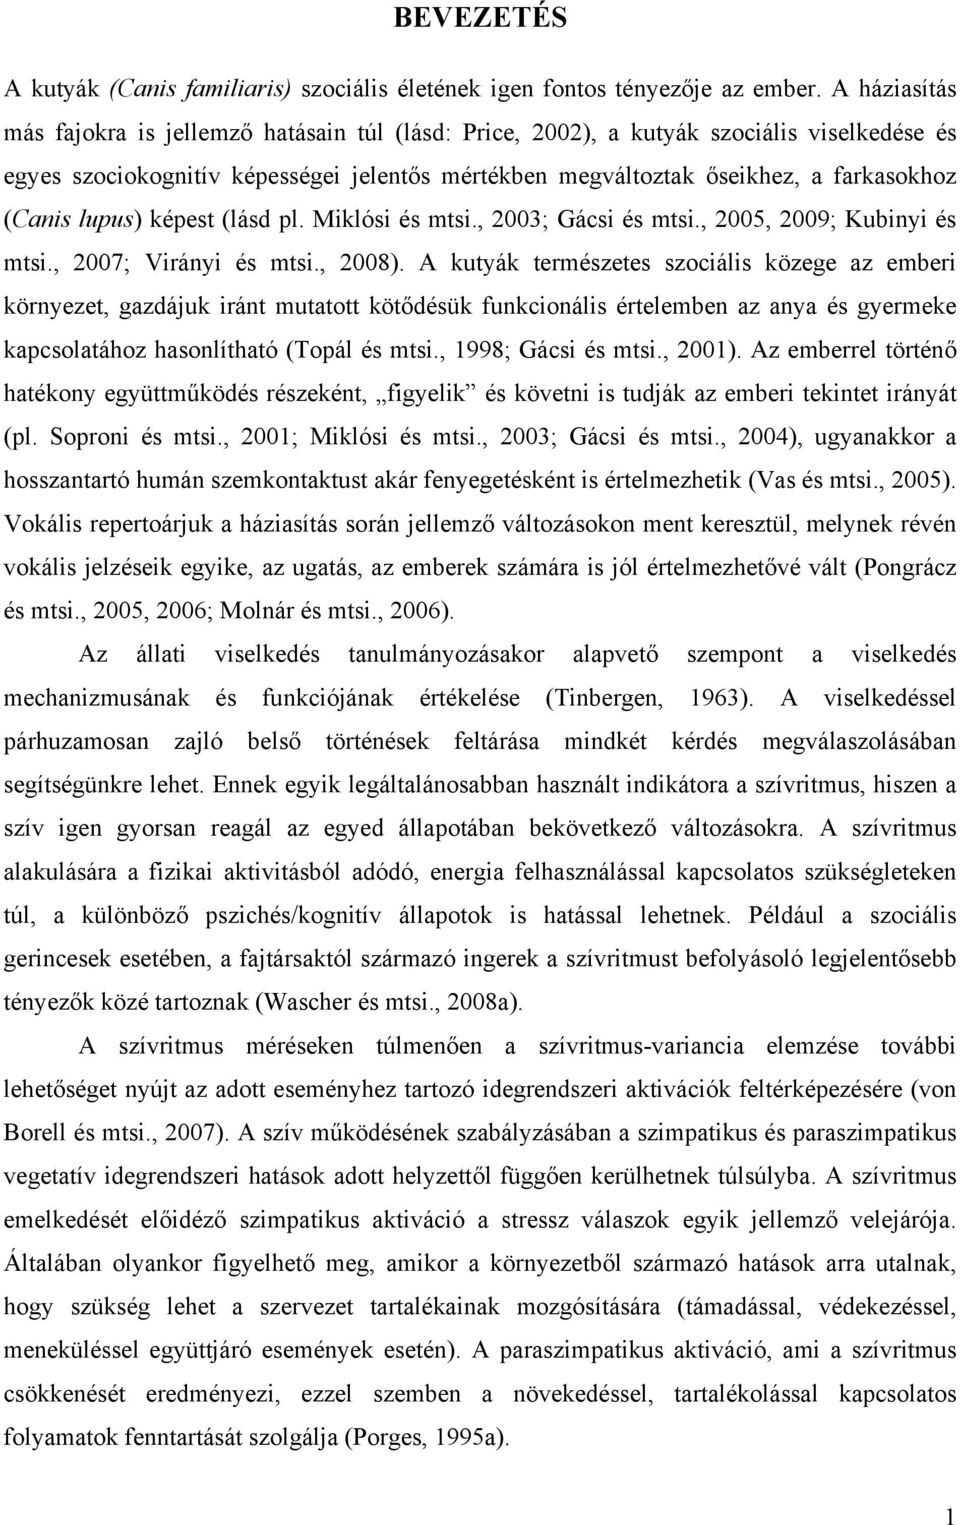 lupus) képest (lásd pl. Miklósi és mtsi., 2003; Gácsi és mtsi., 2005, 2009; Kubinyi és mtsi., 2007; Virányi és mtsi., 2008).